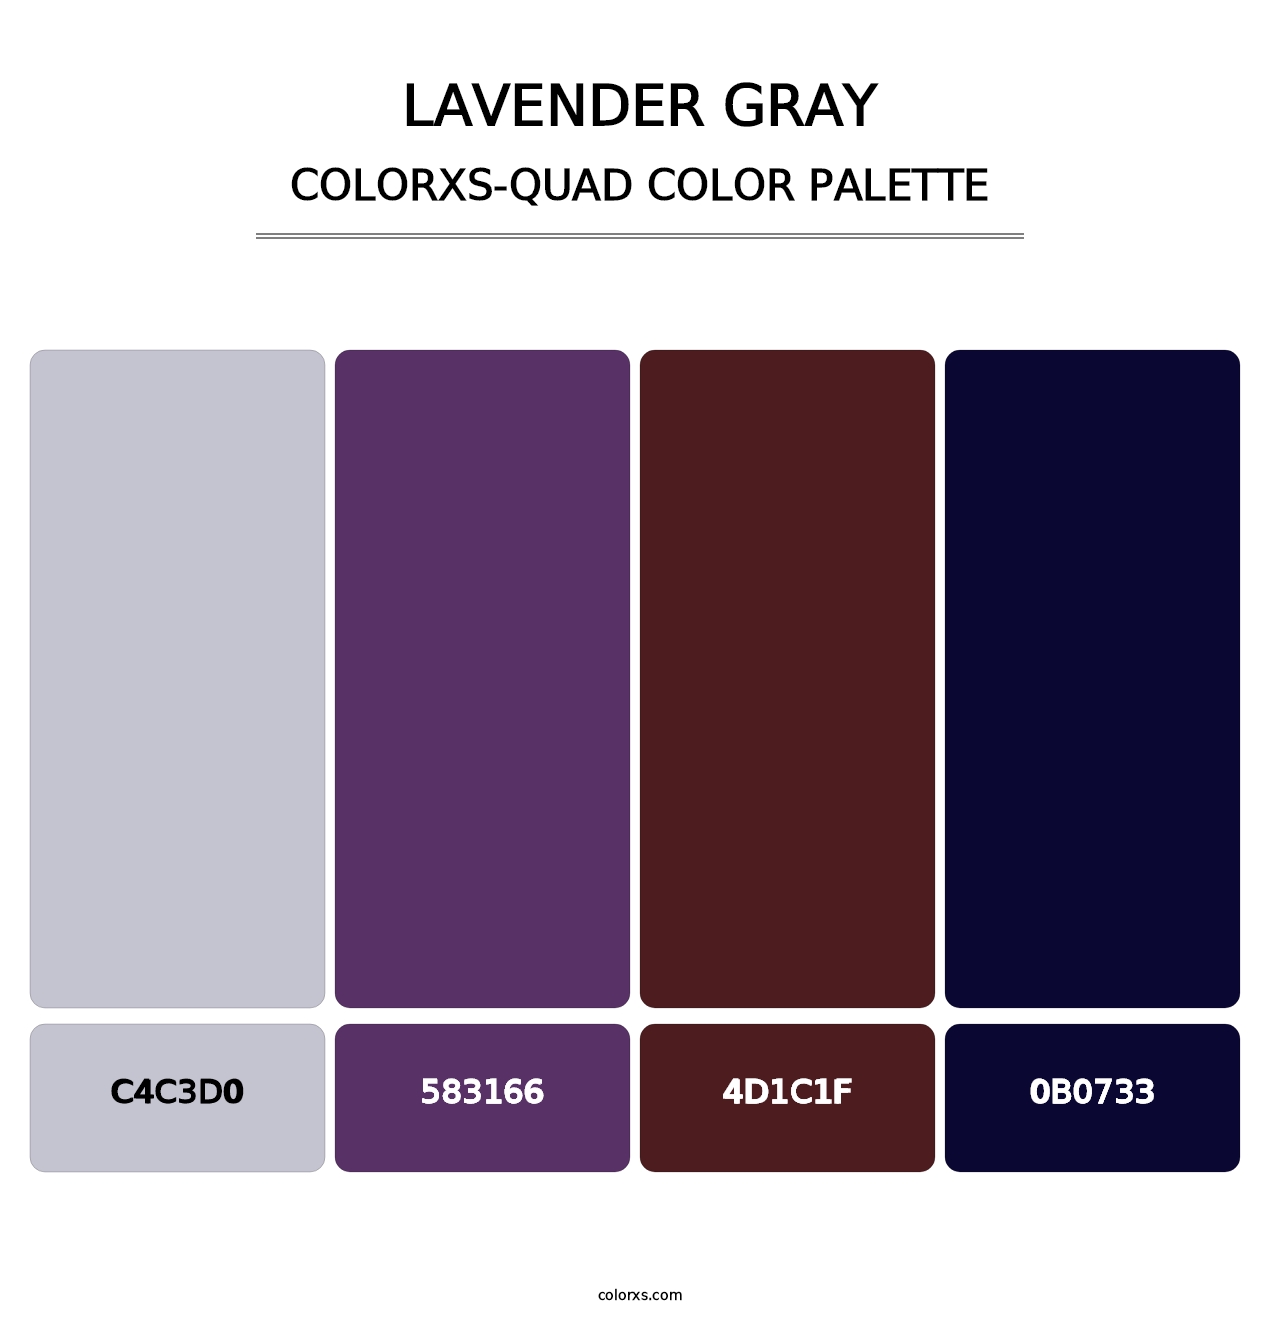 Lavender Gray - Colorxs Quad Palette